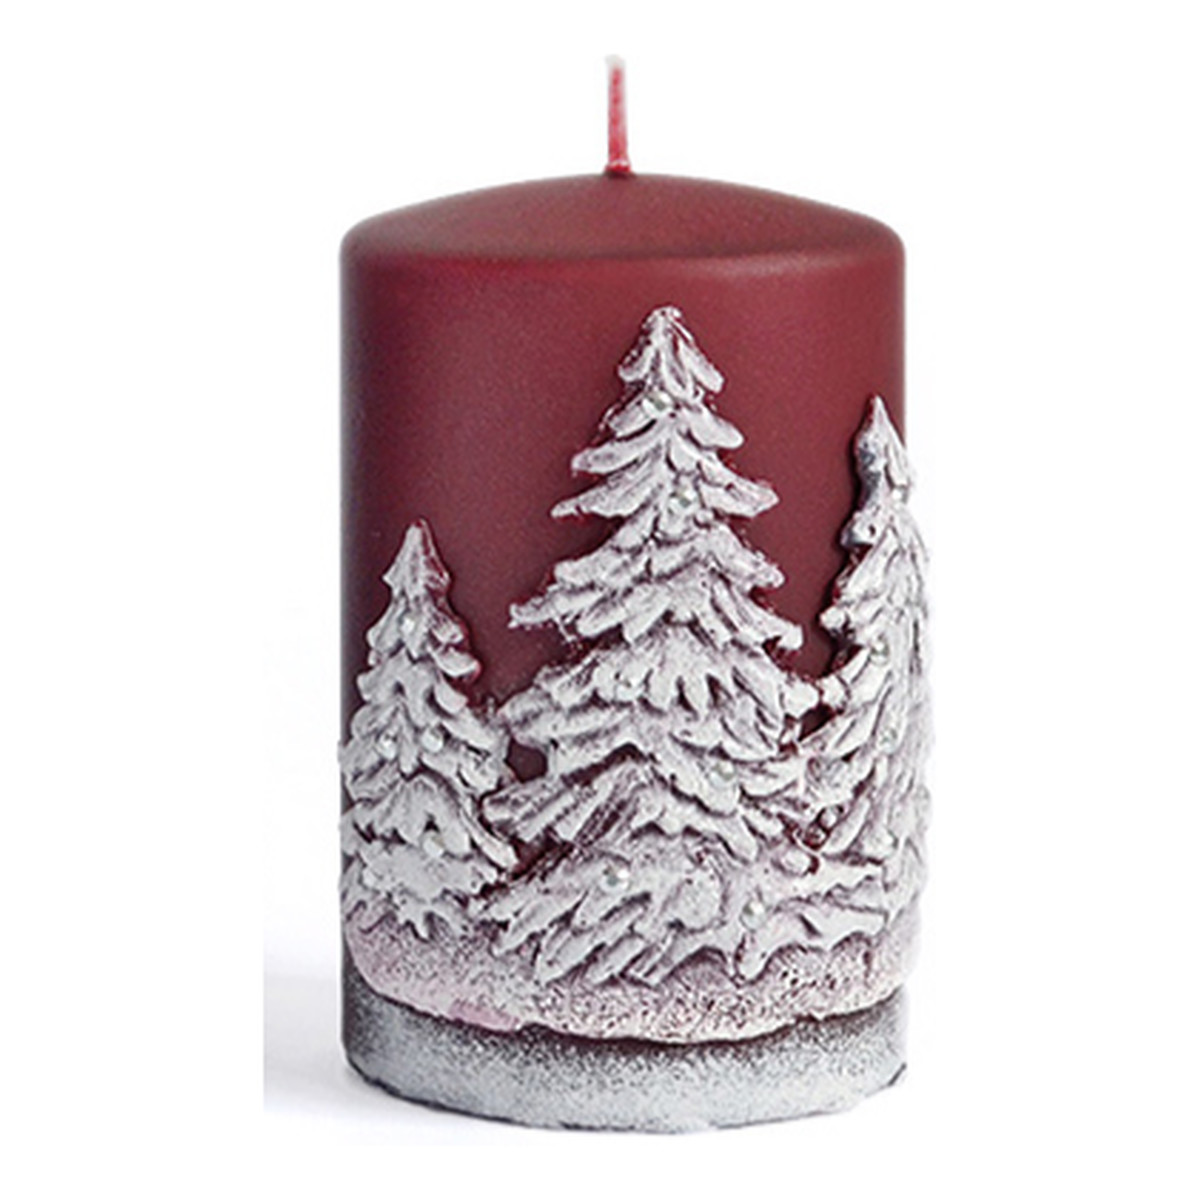 Artman Candles Świeca Zimowe Drzewka walec mały Bordo